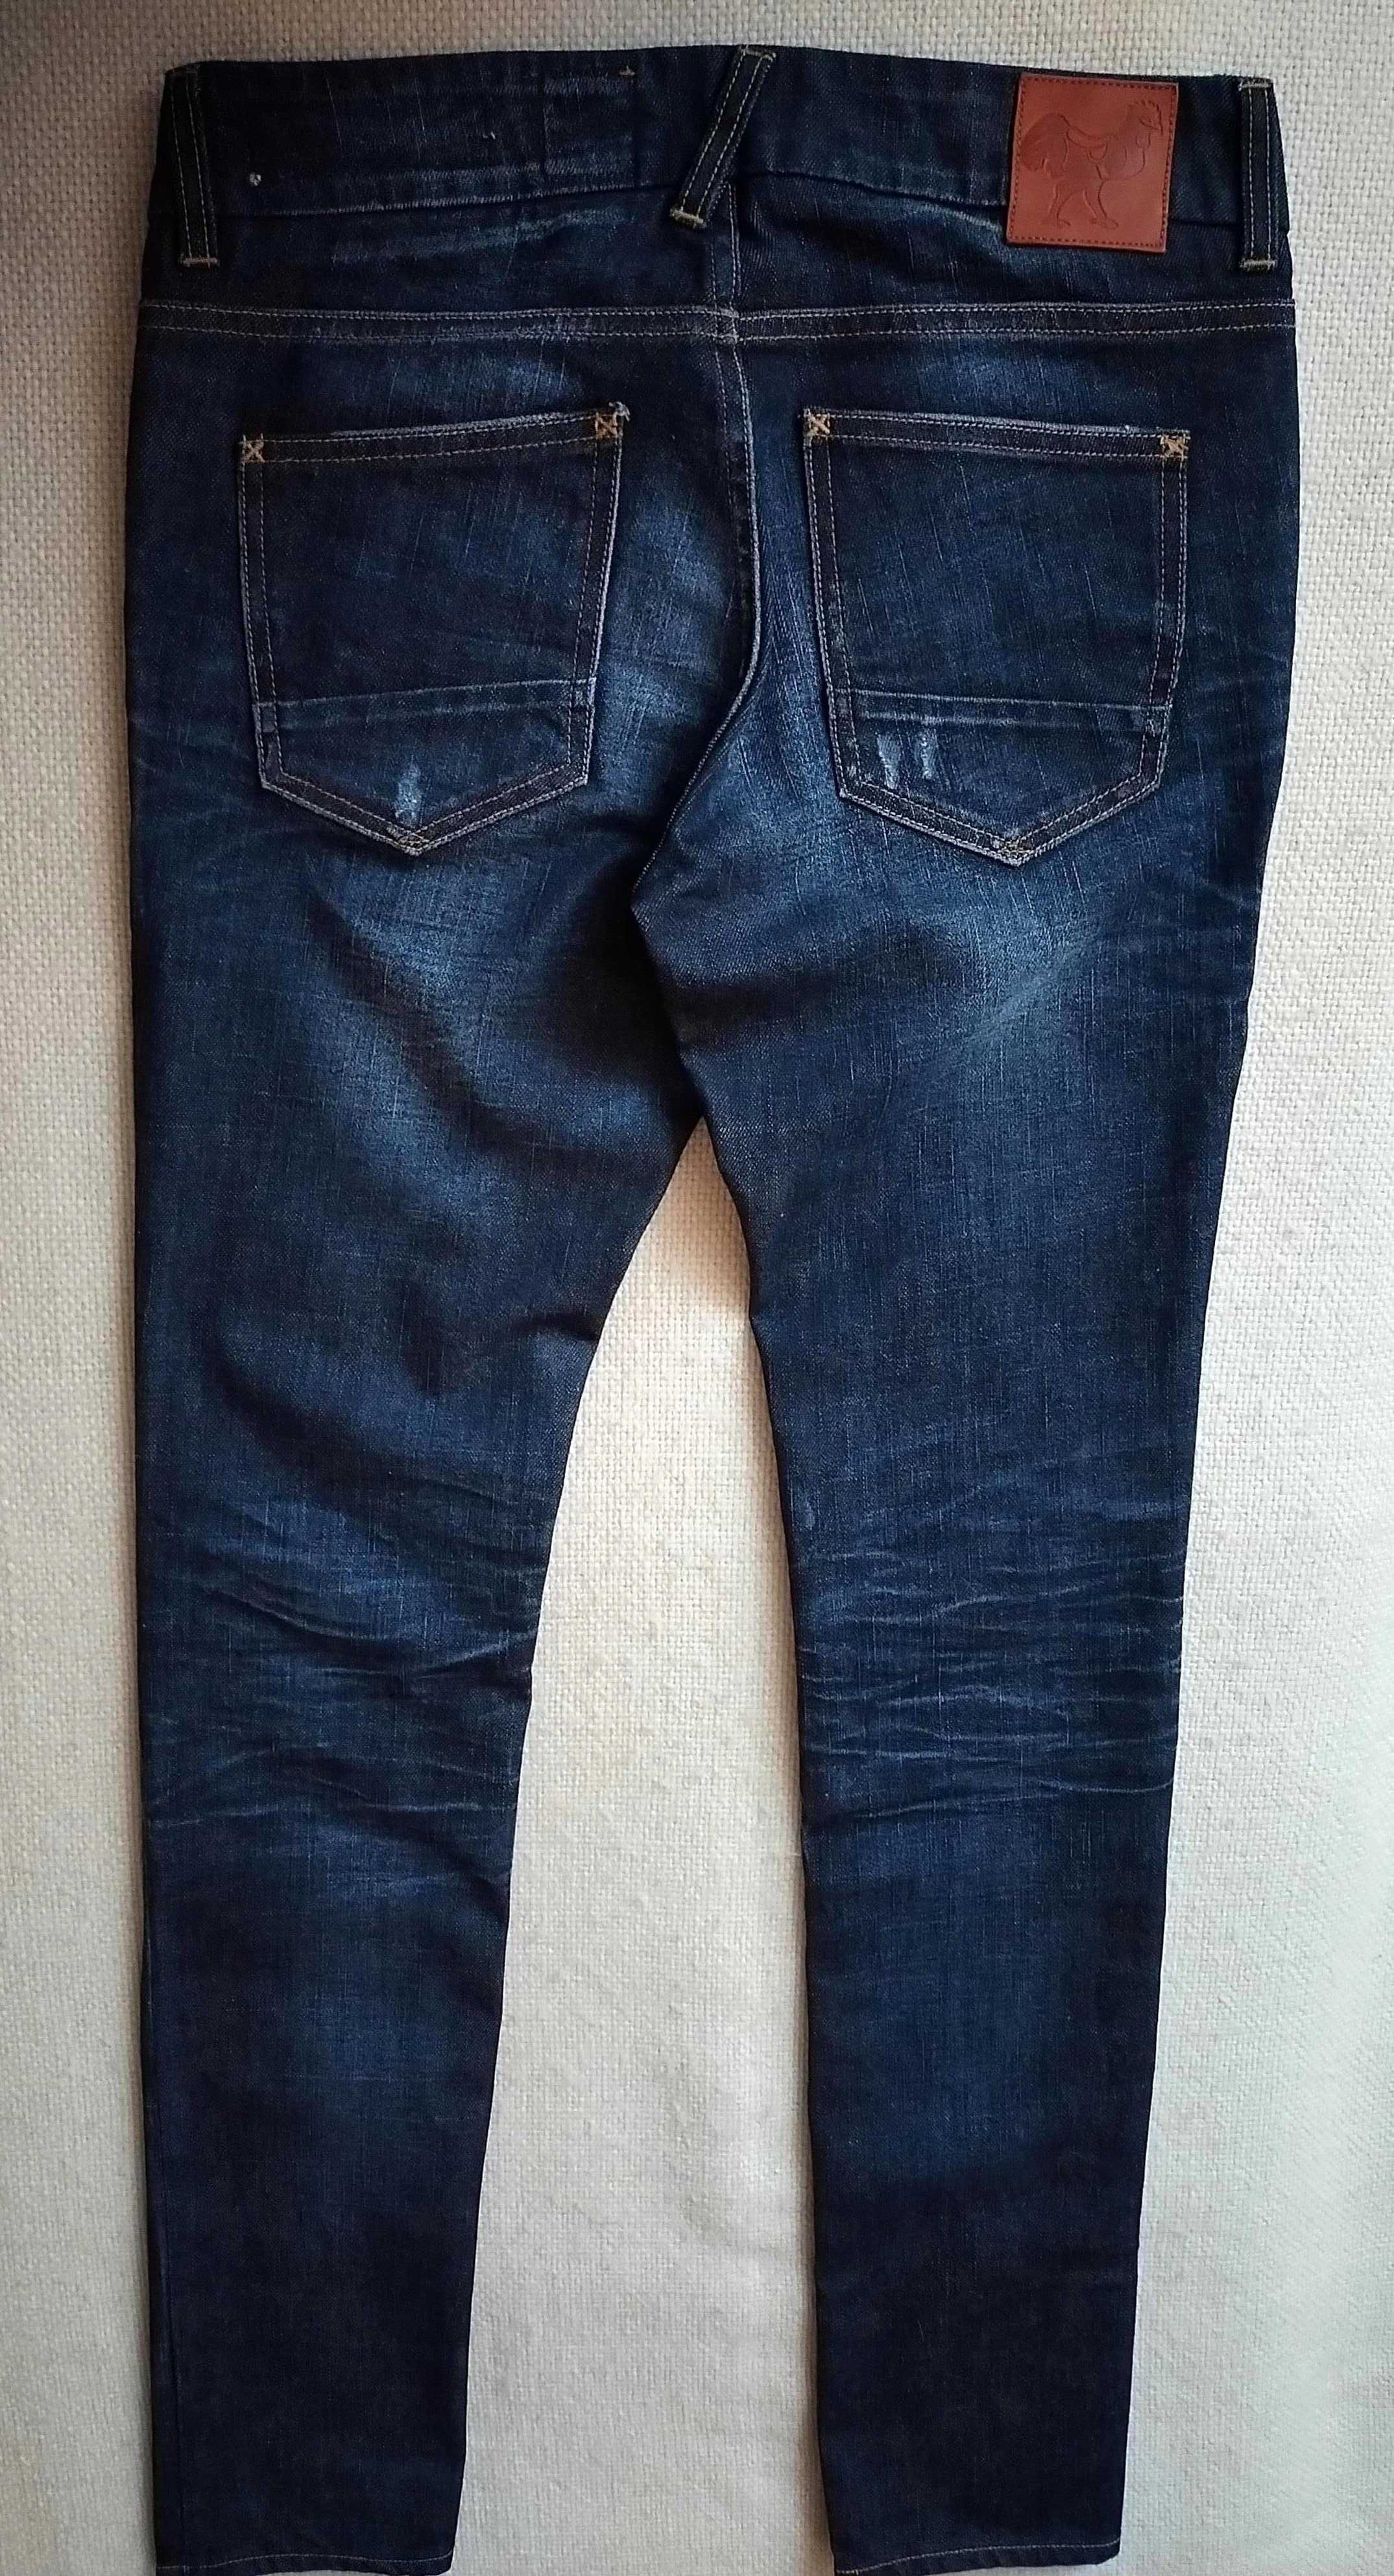 Good Genes женские джинсы W27/L33 (42-44).